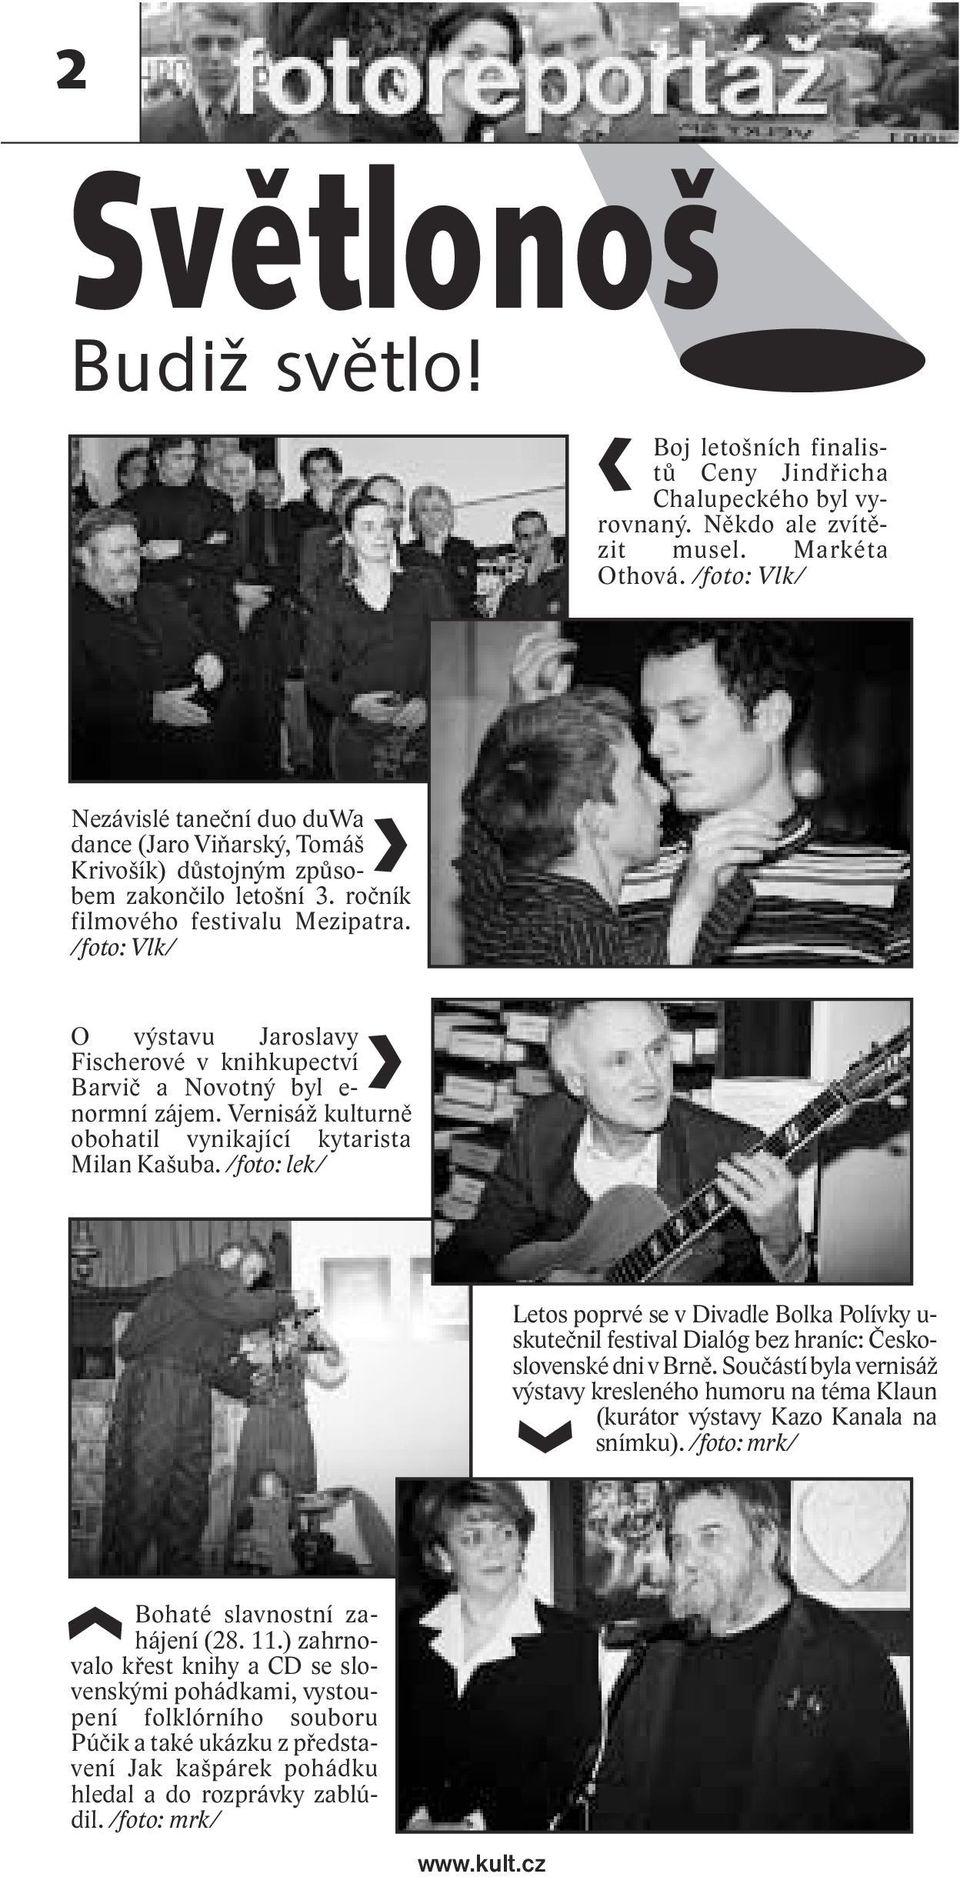 /foto: Vlk/ O výstavu Jaroslavy Fischerové v knihkupectví Barvič a Novotný byl e- normní zájem. Vernisáž kulturně obohatil vynikající kytarista Milan Kašuba.